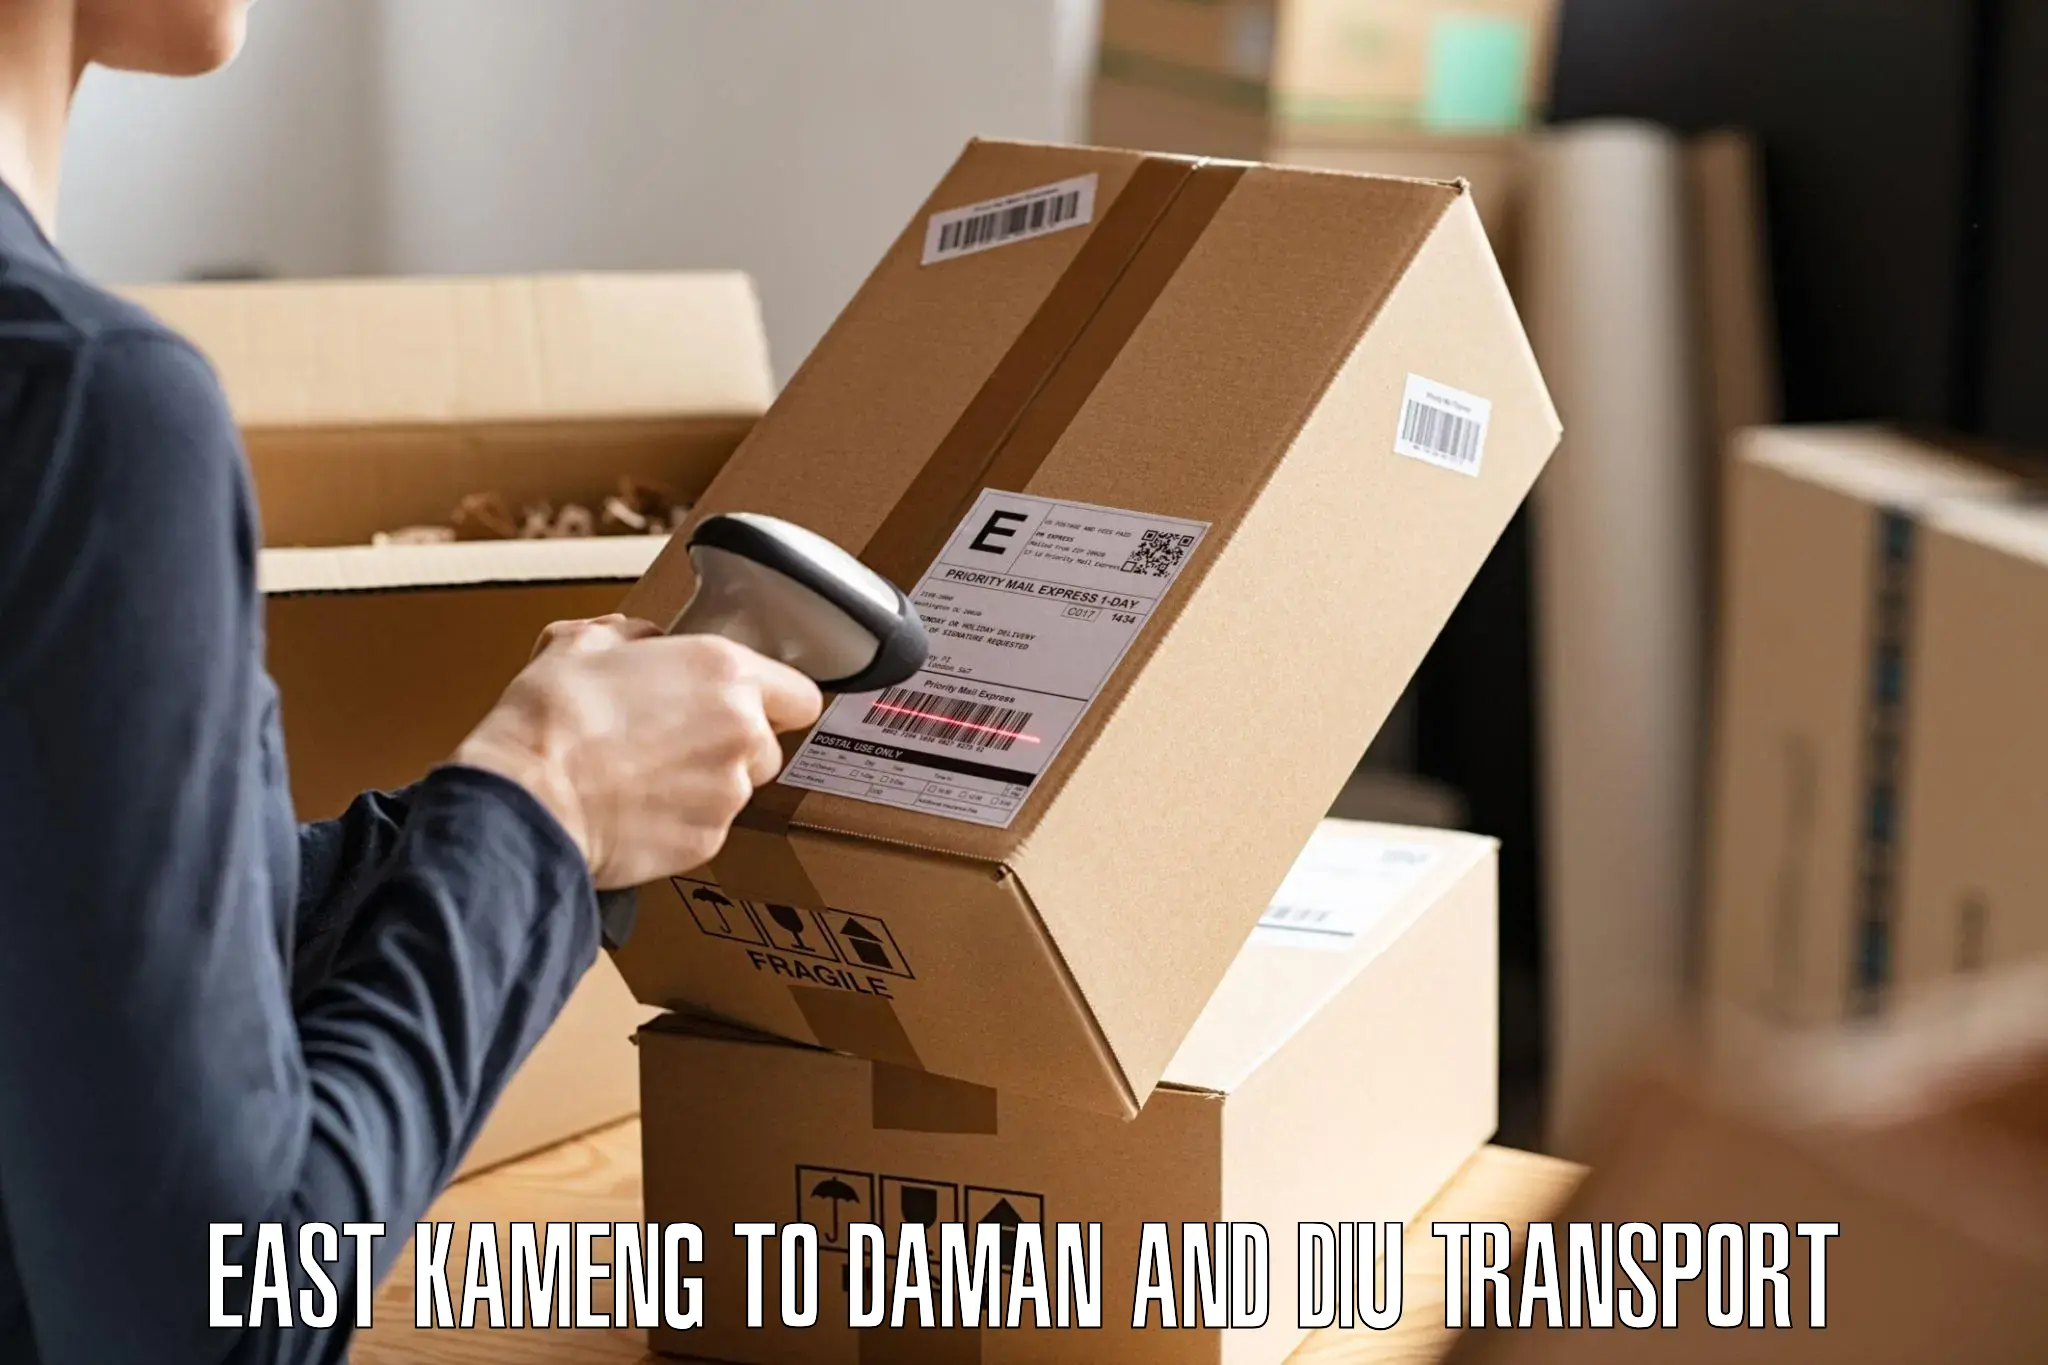 Pick up transport service East Kameng to Daman and Diu